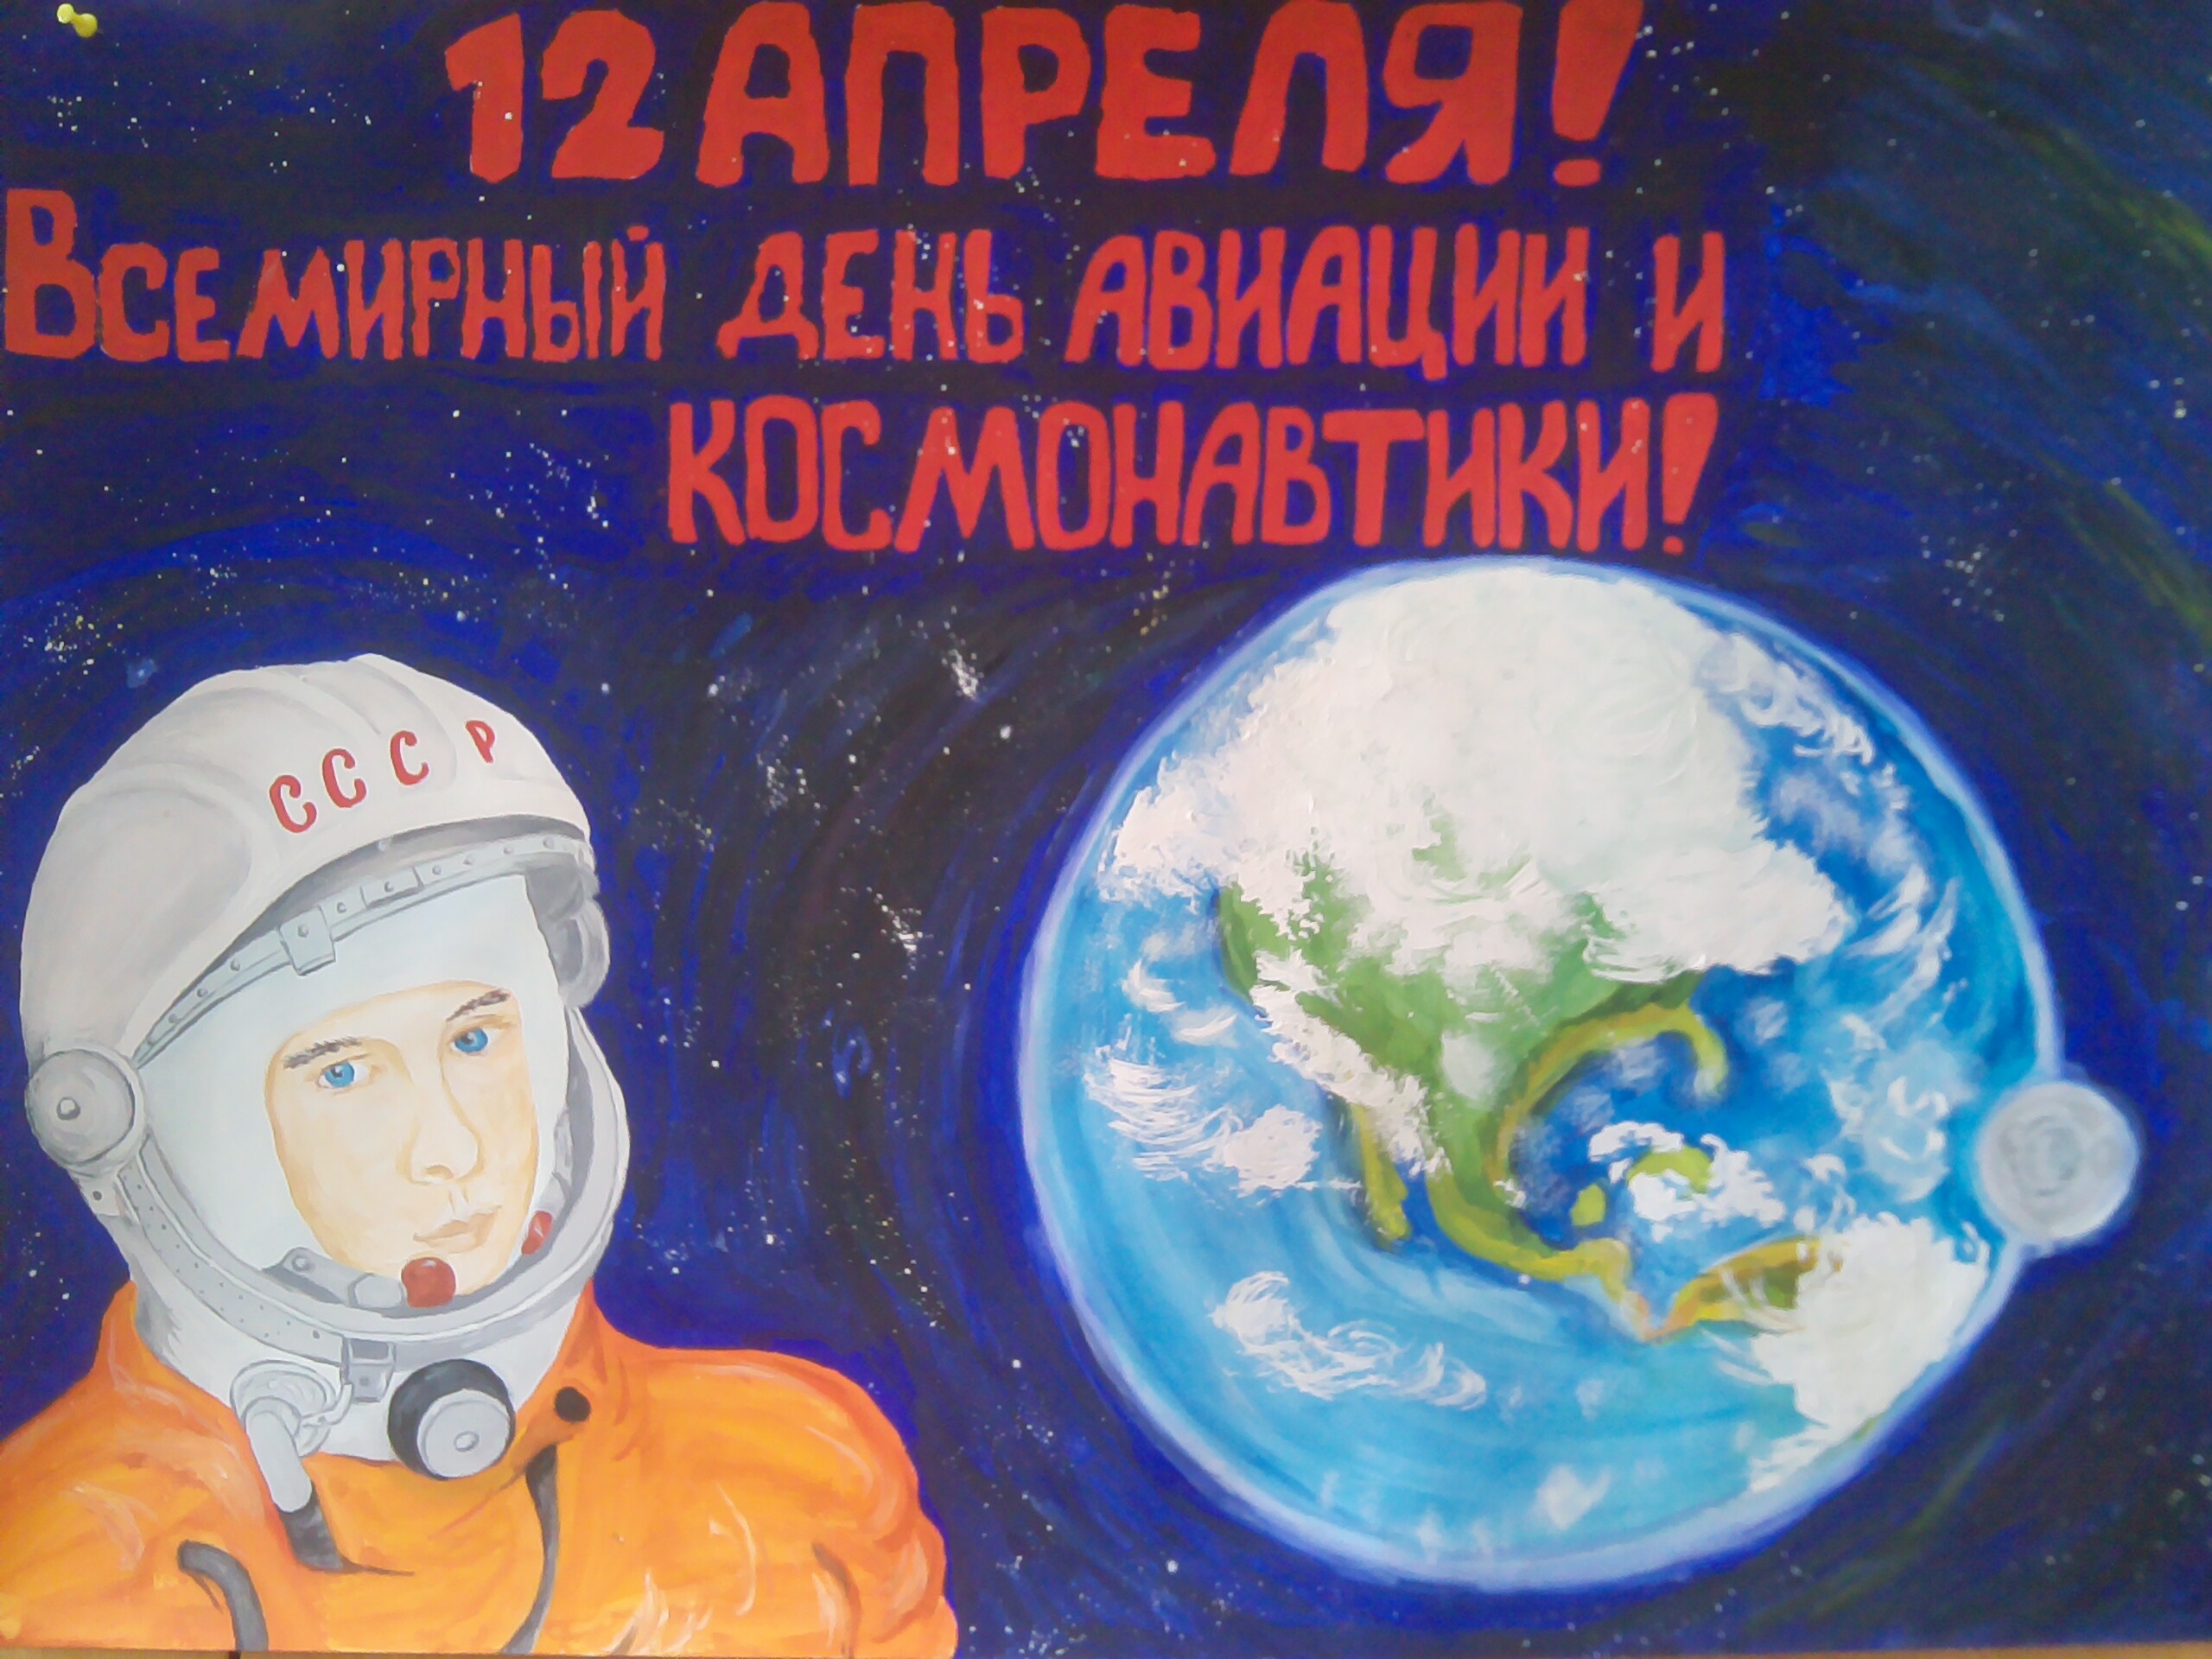 Приуроченная ко дню космонавтики. Плакат "день космонавтики". Плакат ко Дню космонавти. Плакат на день косманавт. Плокатна день космонавтики.